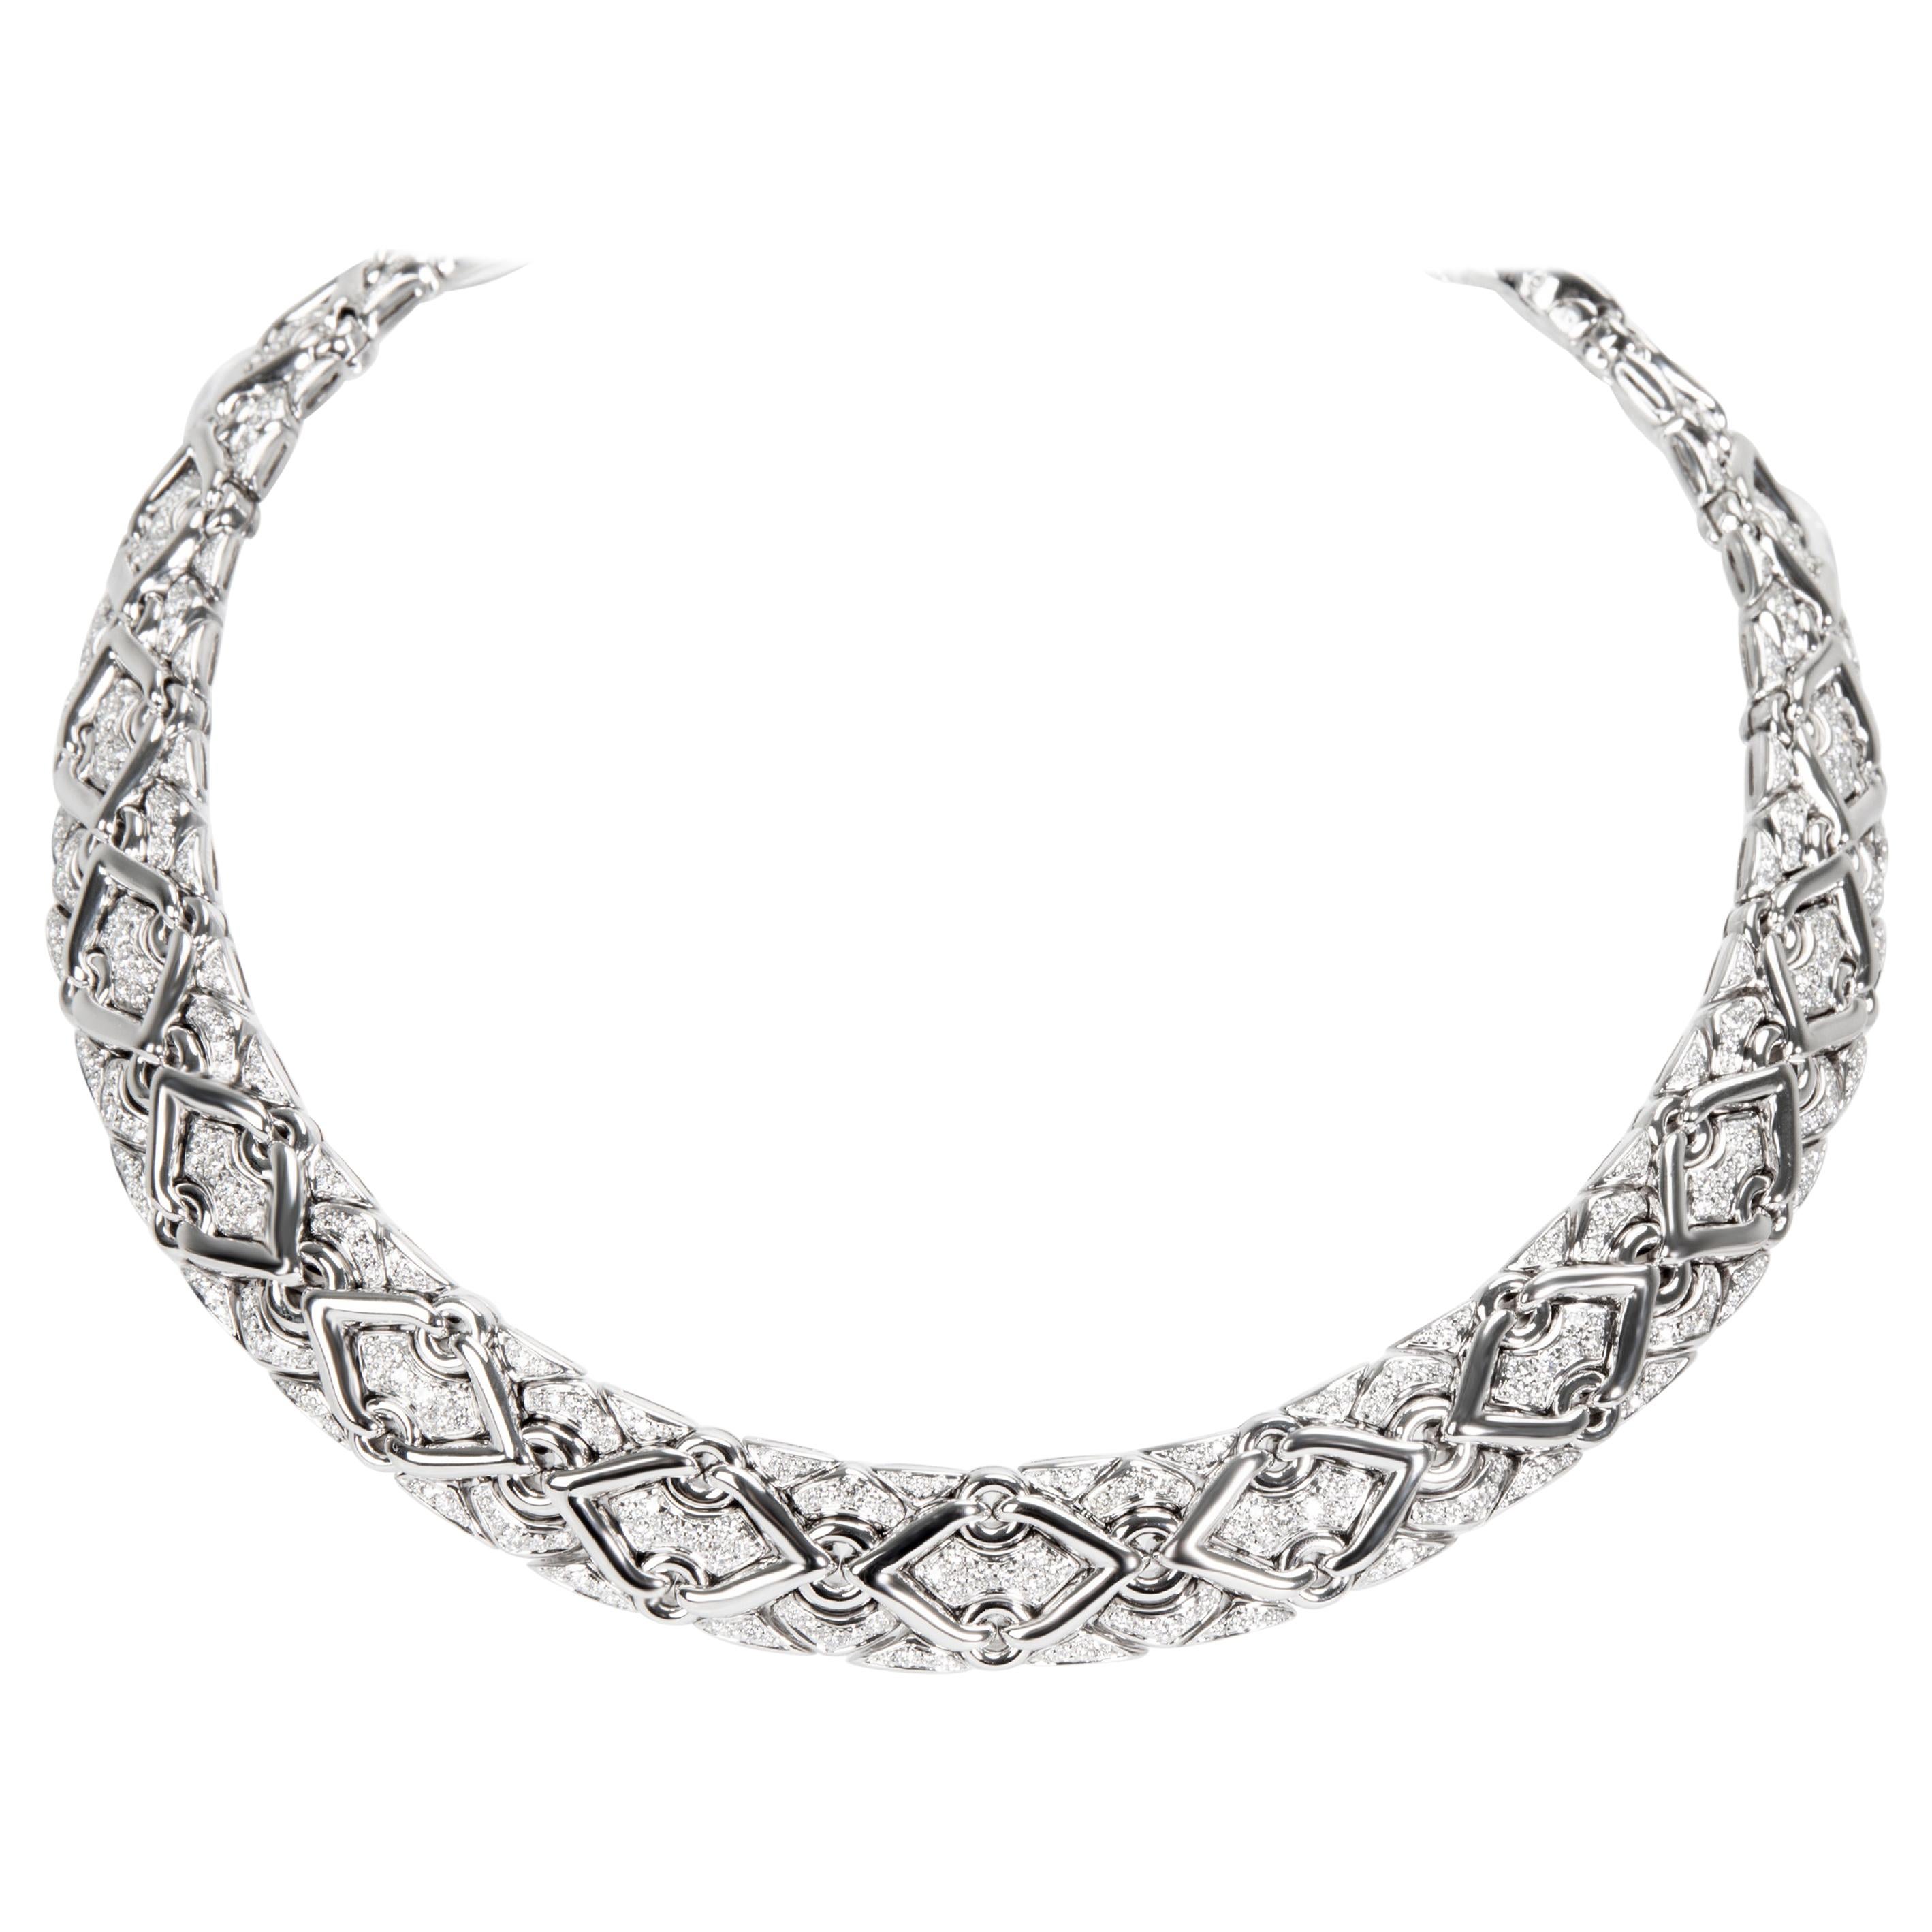 Bulgari Trika Diamond Necklace in 18 Karat White Gold 7.5 Carat